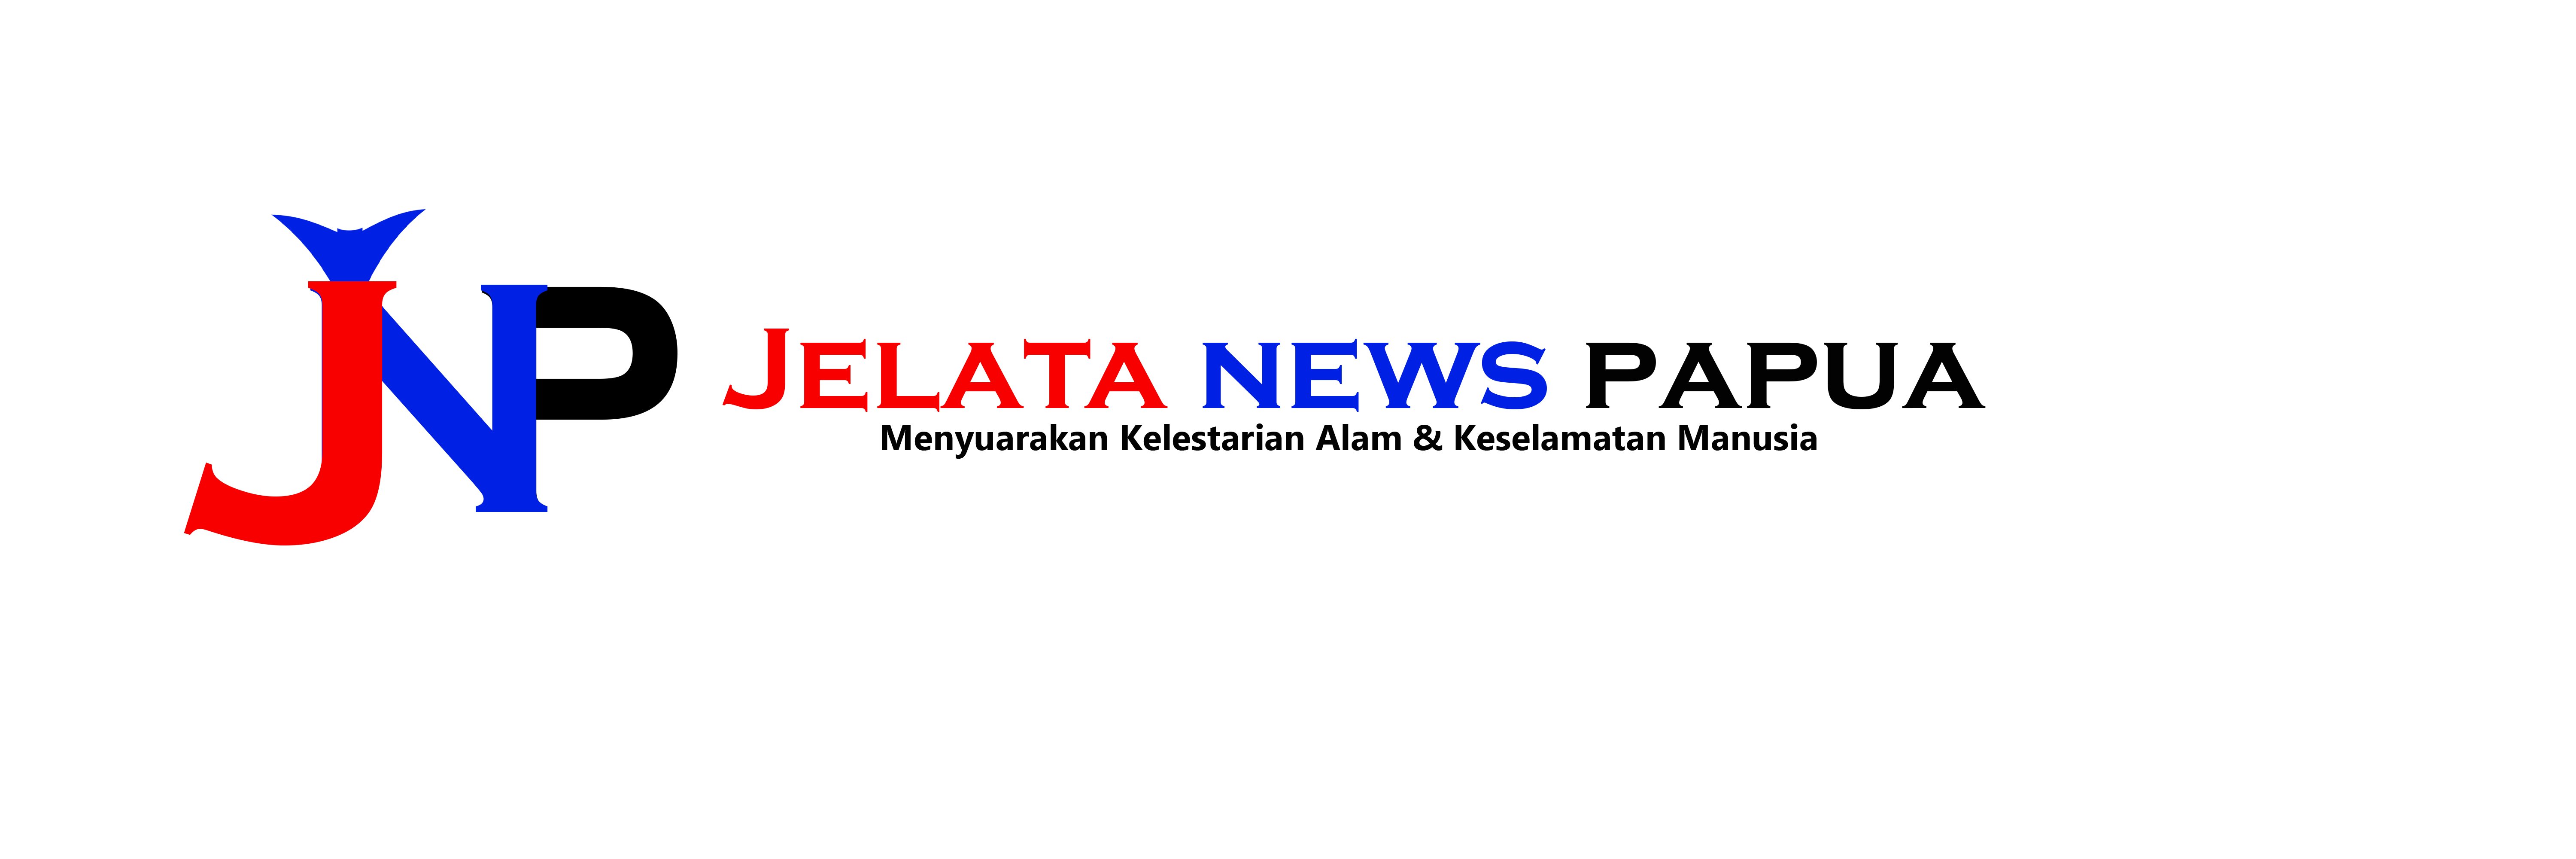 JELATA NEWS PAPUA